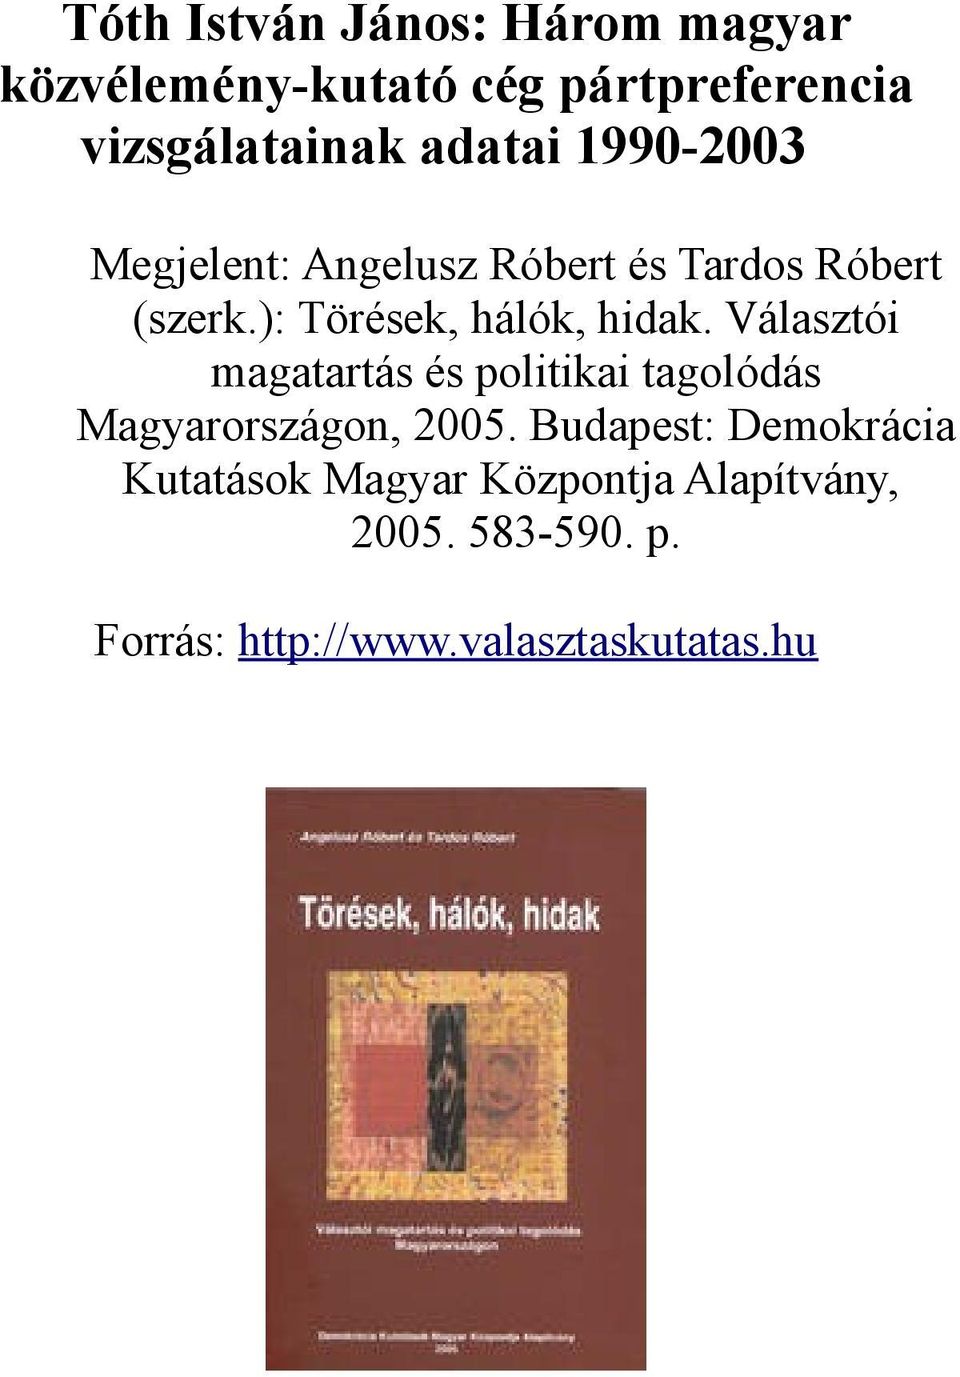 ): Törések, hálók, hidak. Választói magatartás és politikai tagolódás Magyarországon, 2005.